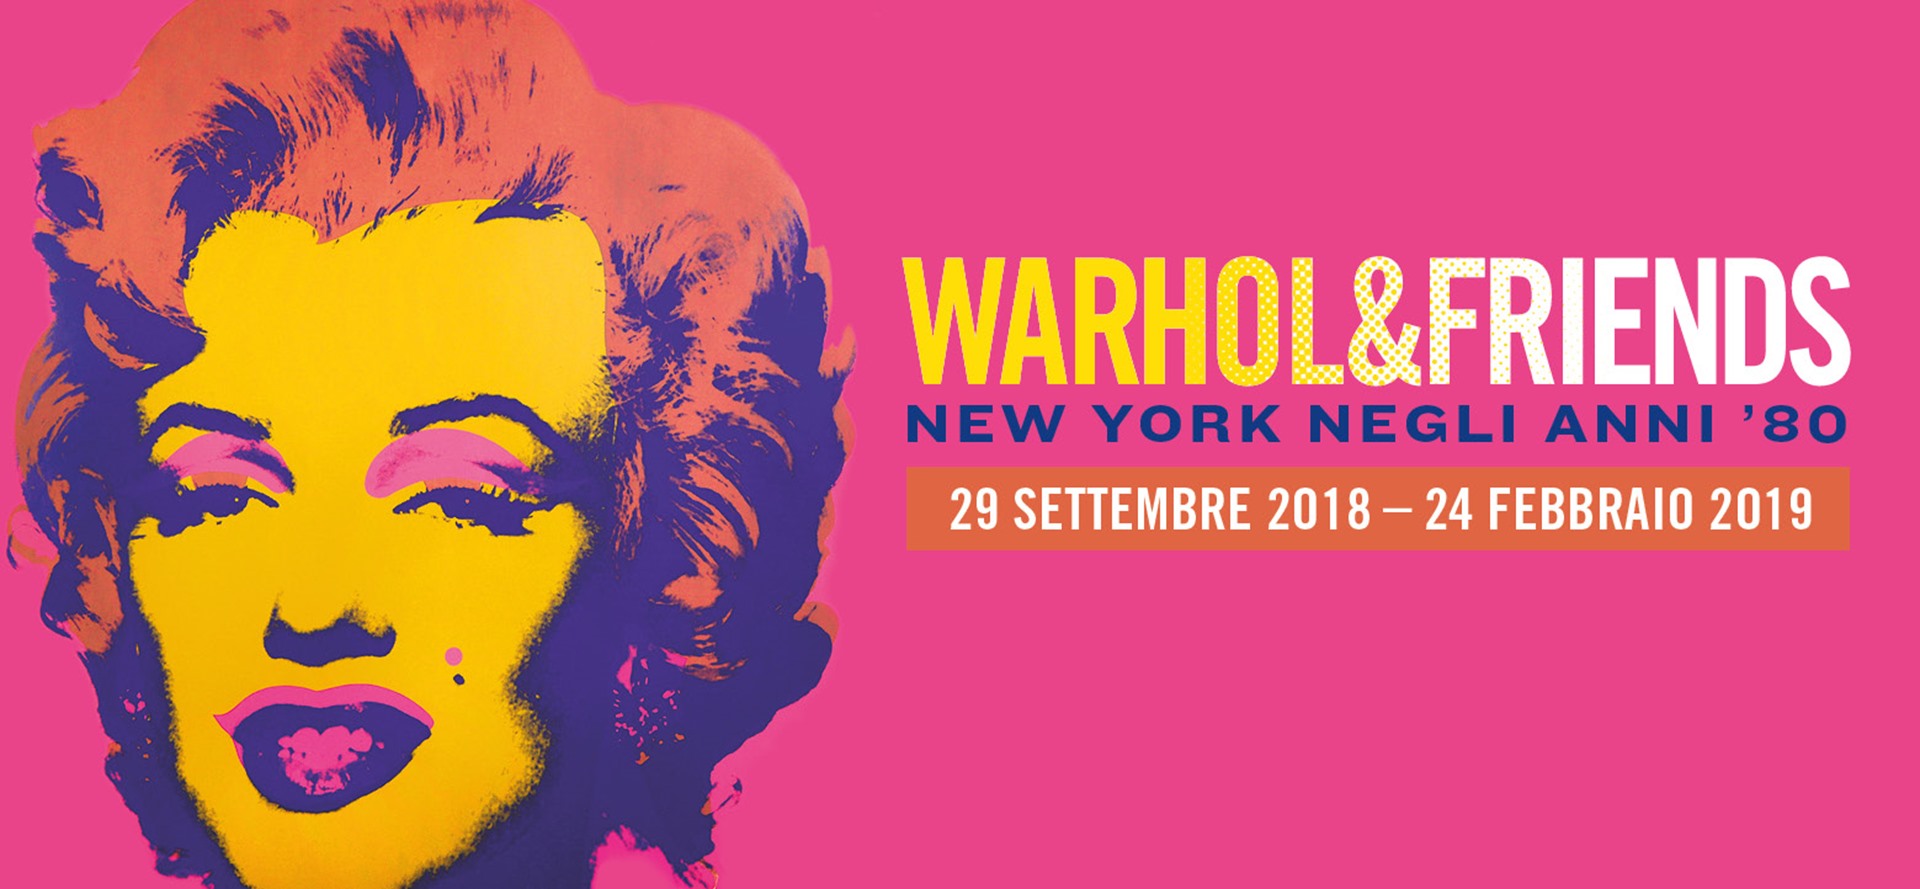 Warhol & Friends